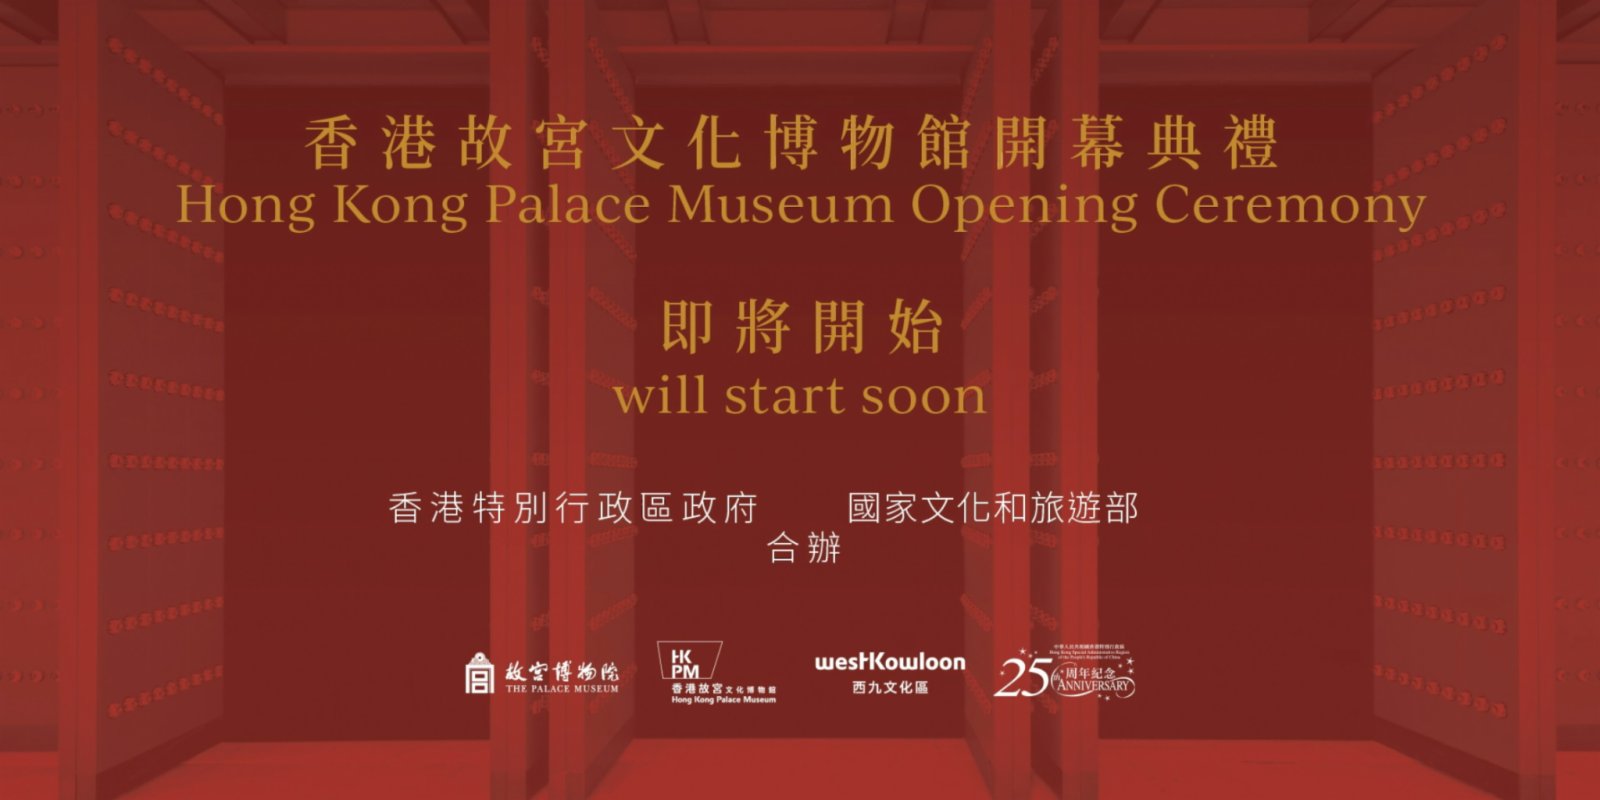 【點直播】6月22日 香港故宮文化博物館開幕典禮